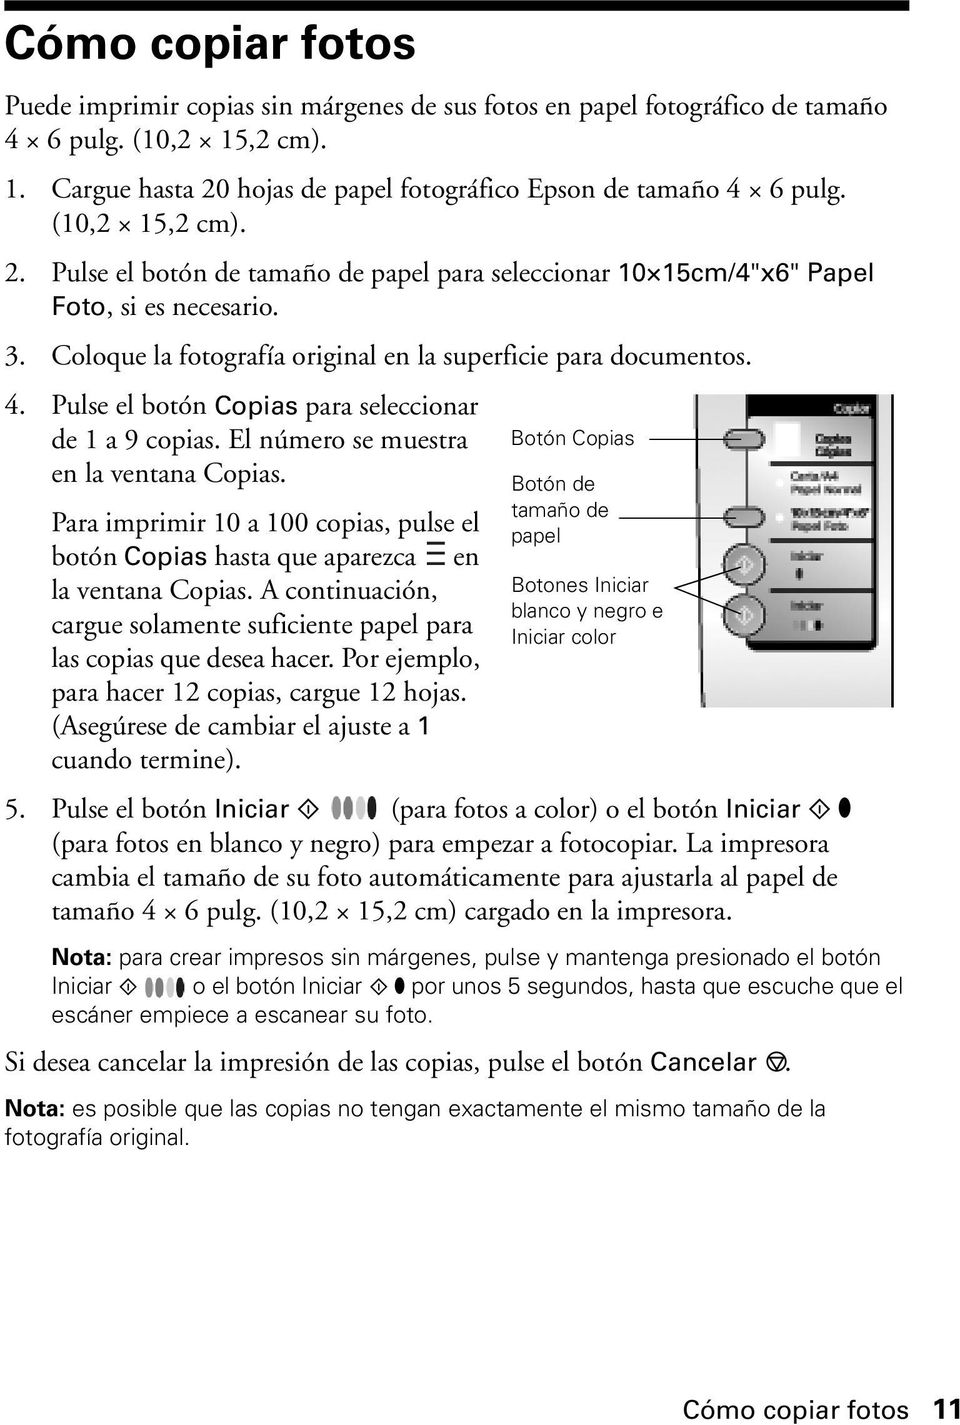 Pulse el botón Copias para seleccionar de 1 a 9 copias. El número se muestra en la ventana Copias. Para imprimir 10 a 100 copias, pulse el botón Copias hasta que aparezca en la ventana Copias.